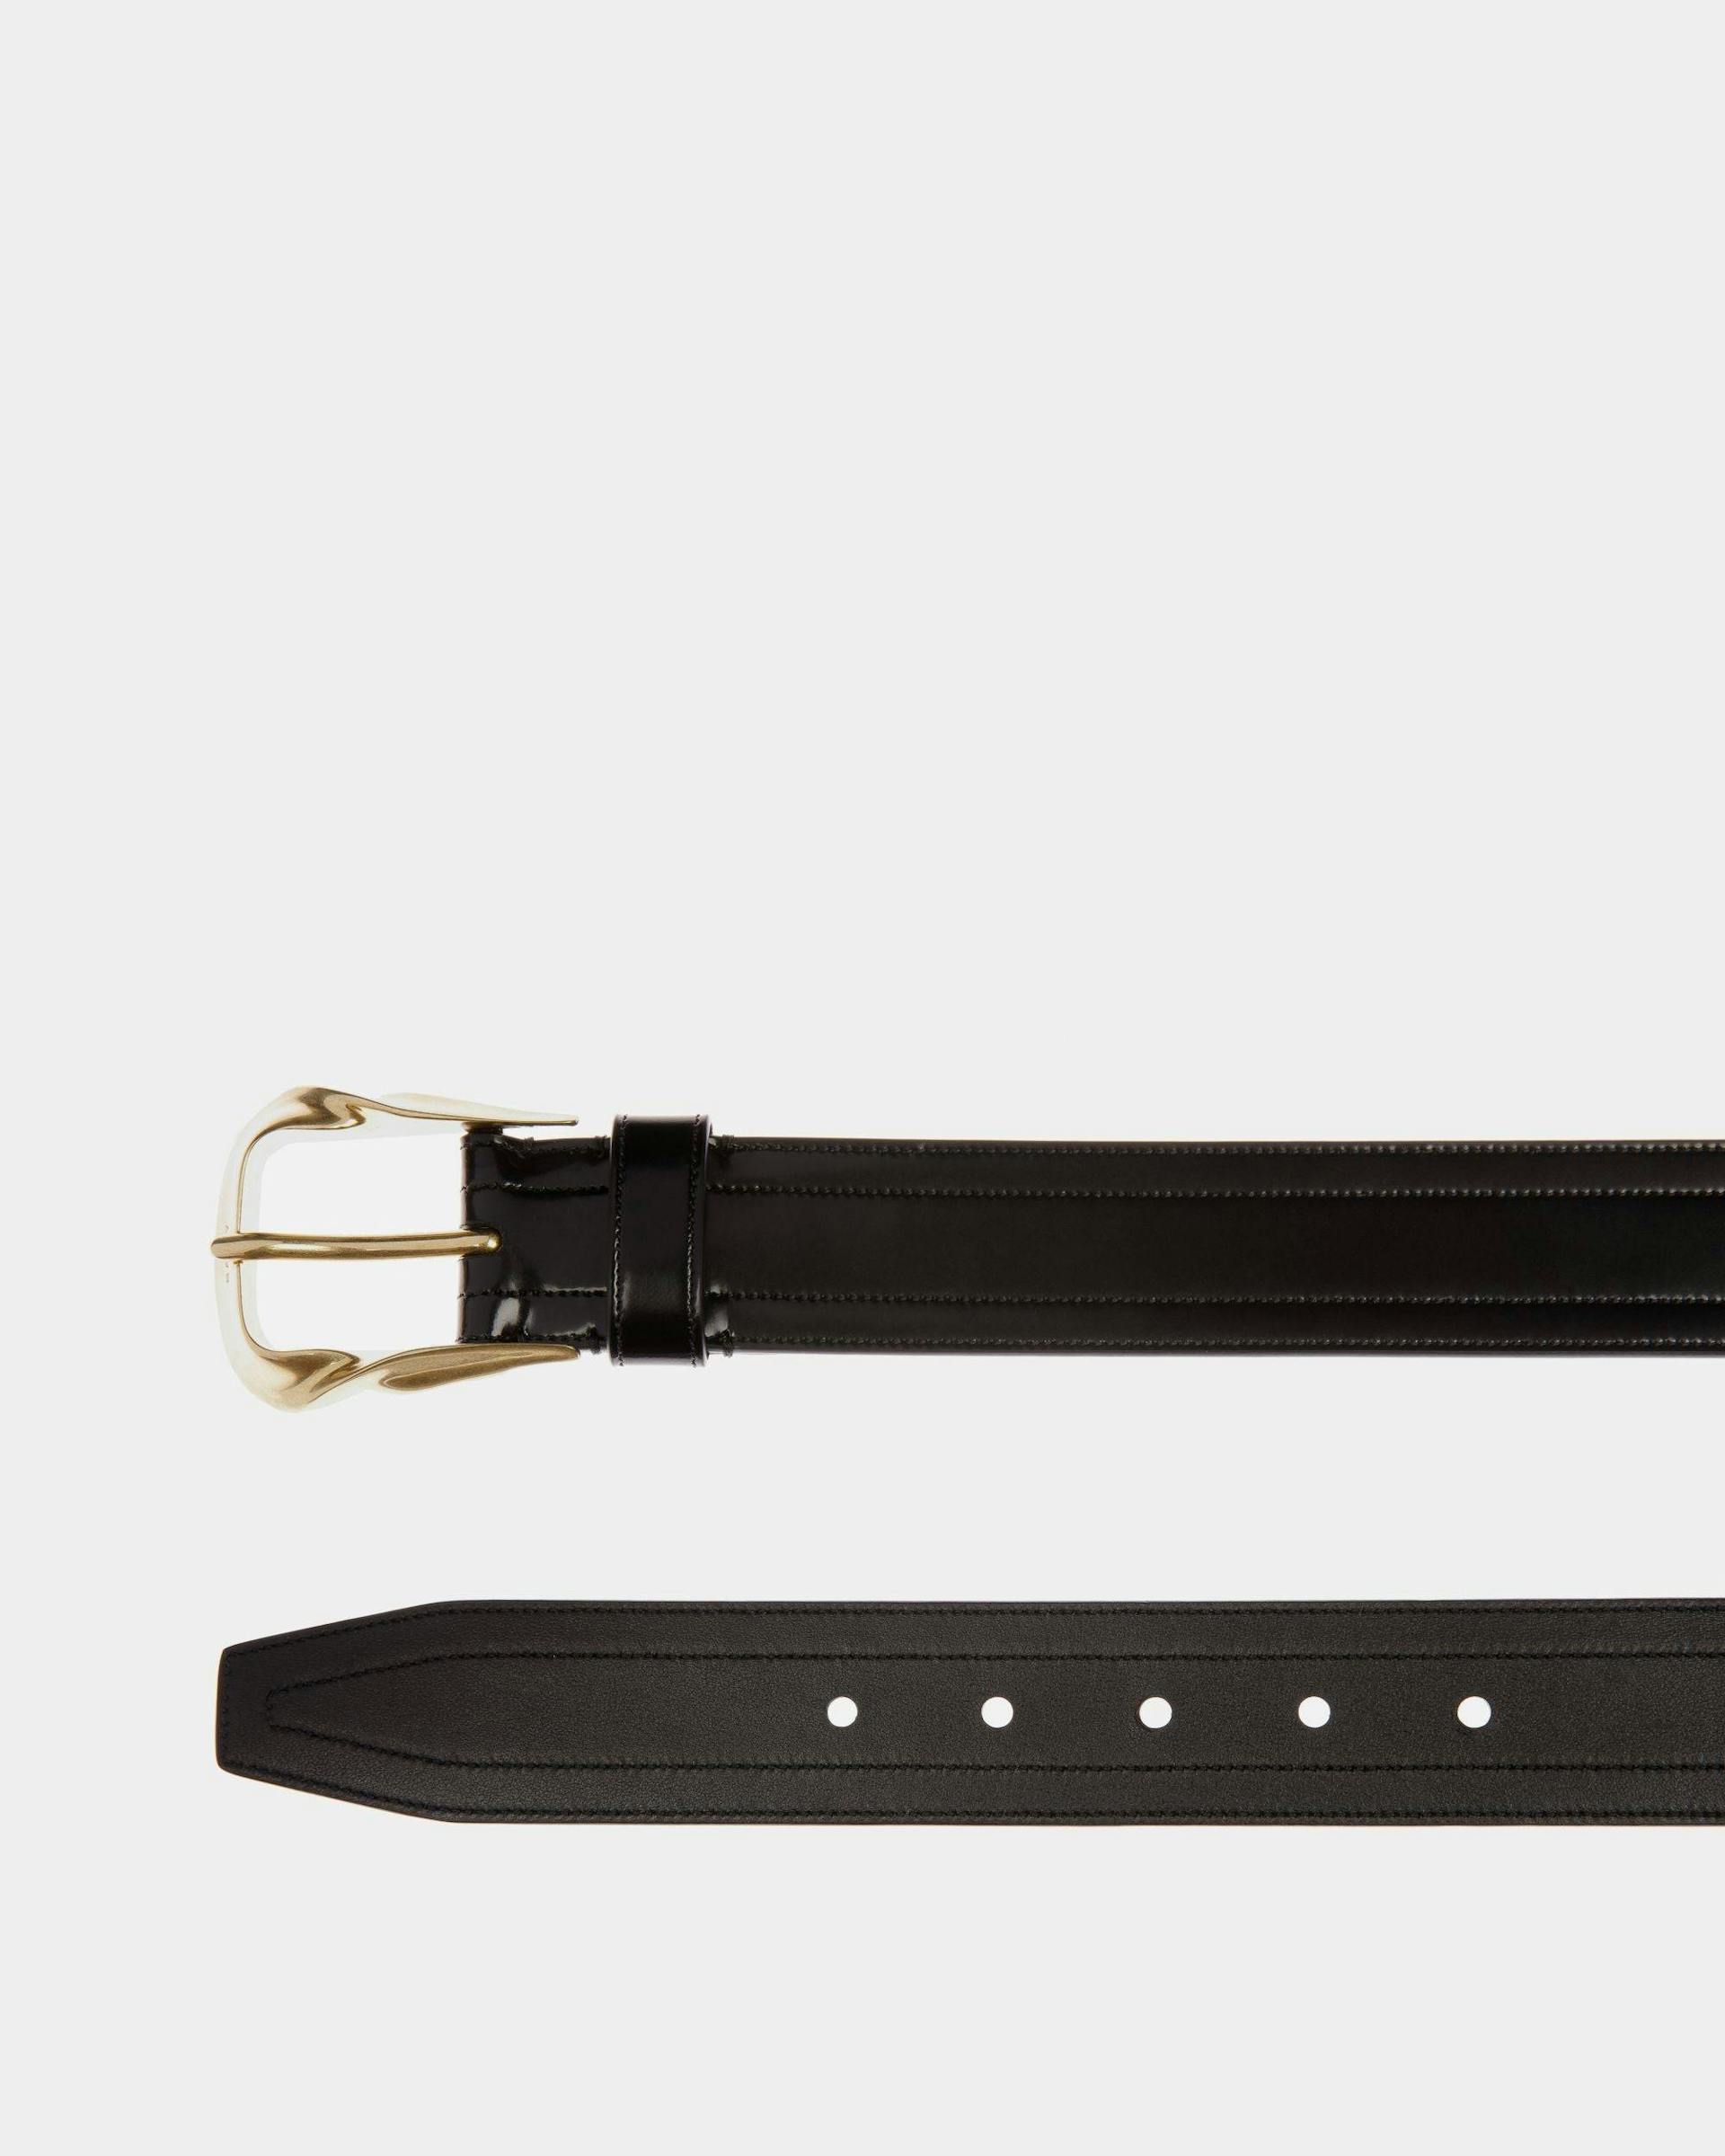 Men's Emblem Buckle 35mm Belt In Black Leather | Bally | Still Life Detail